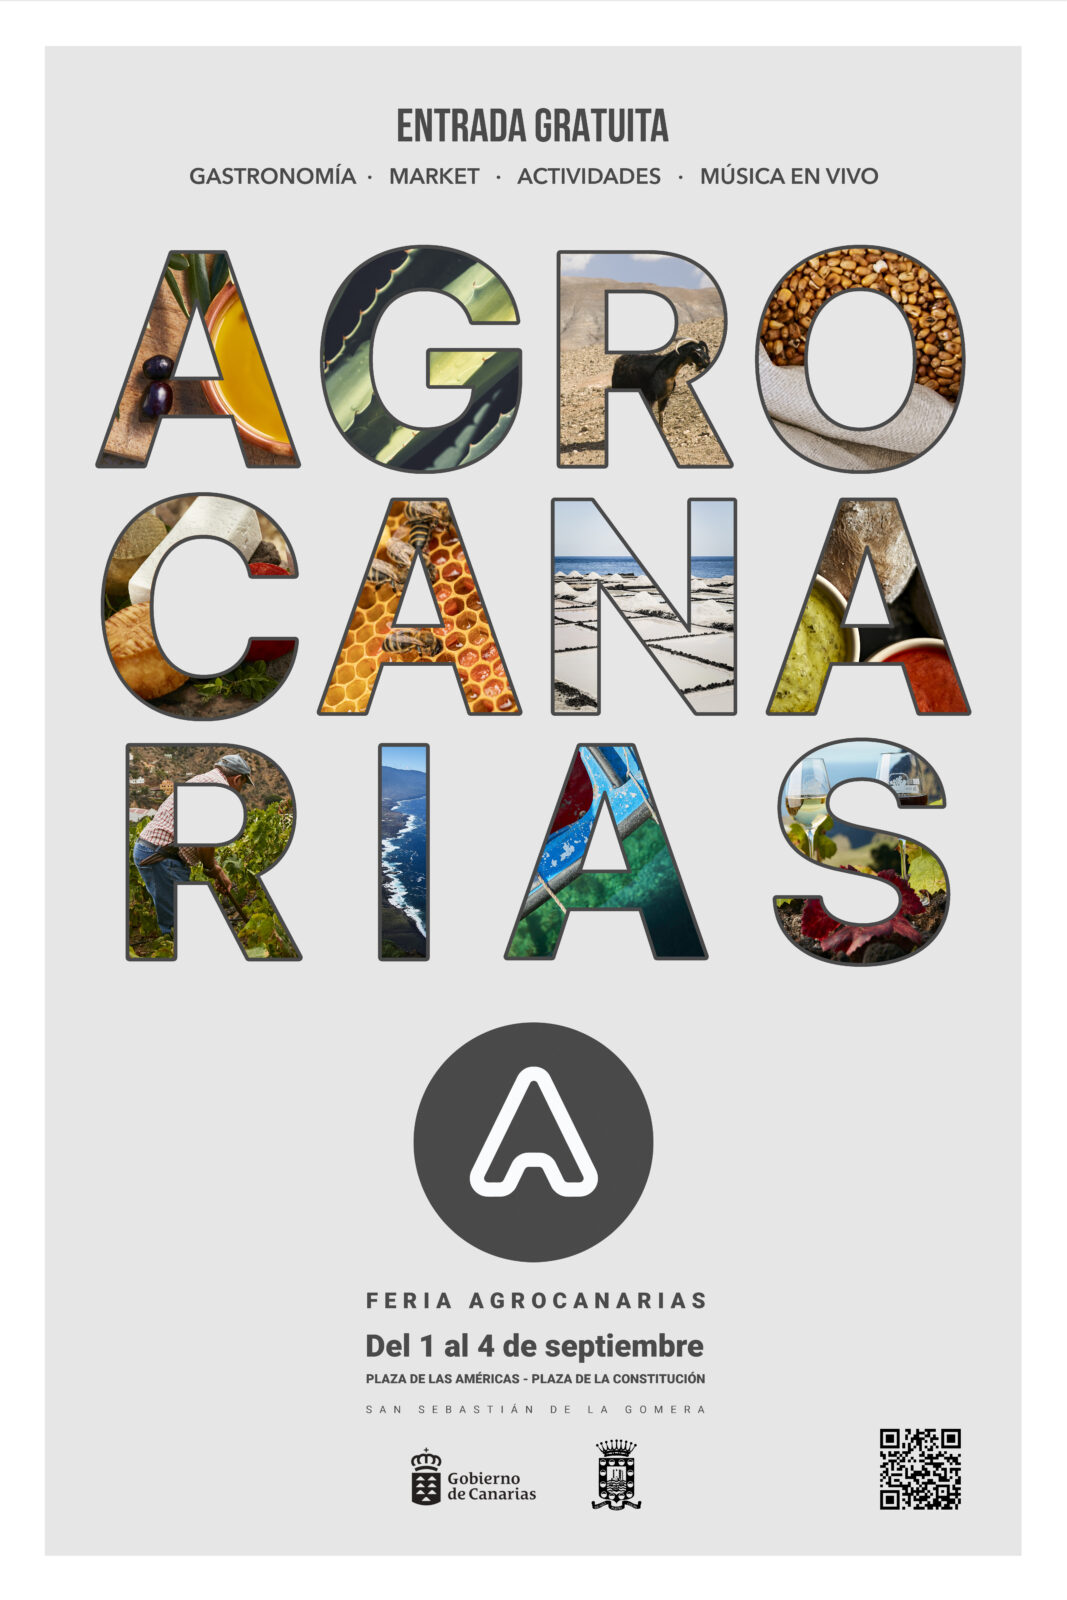 Abierto plazo de inscripción de productores para la Feria Agrocanarias de La Gomera